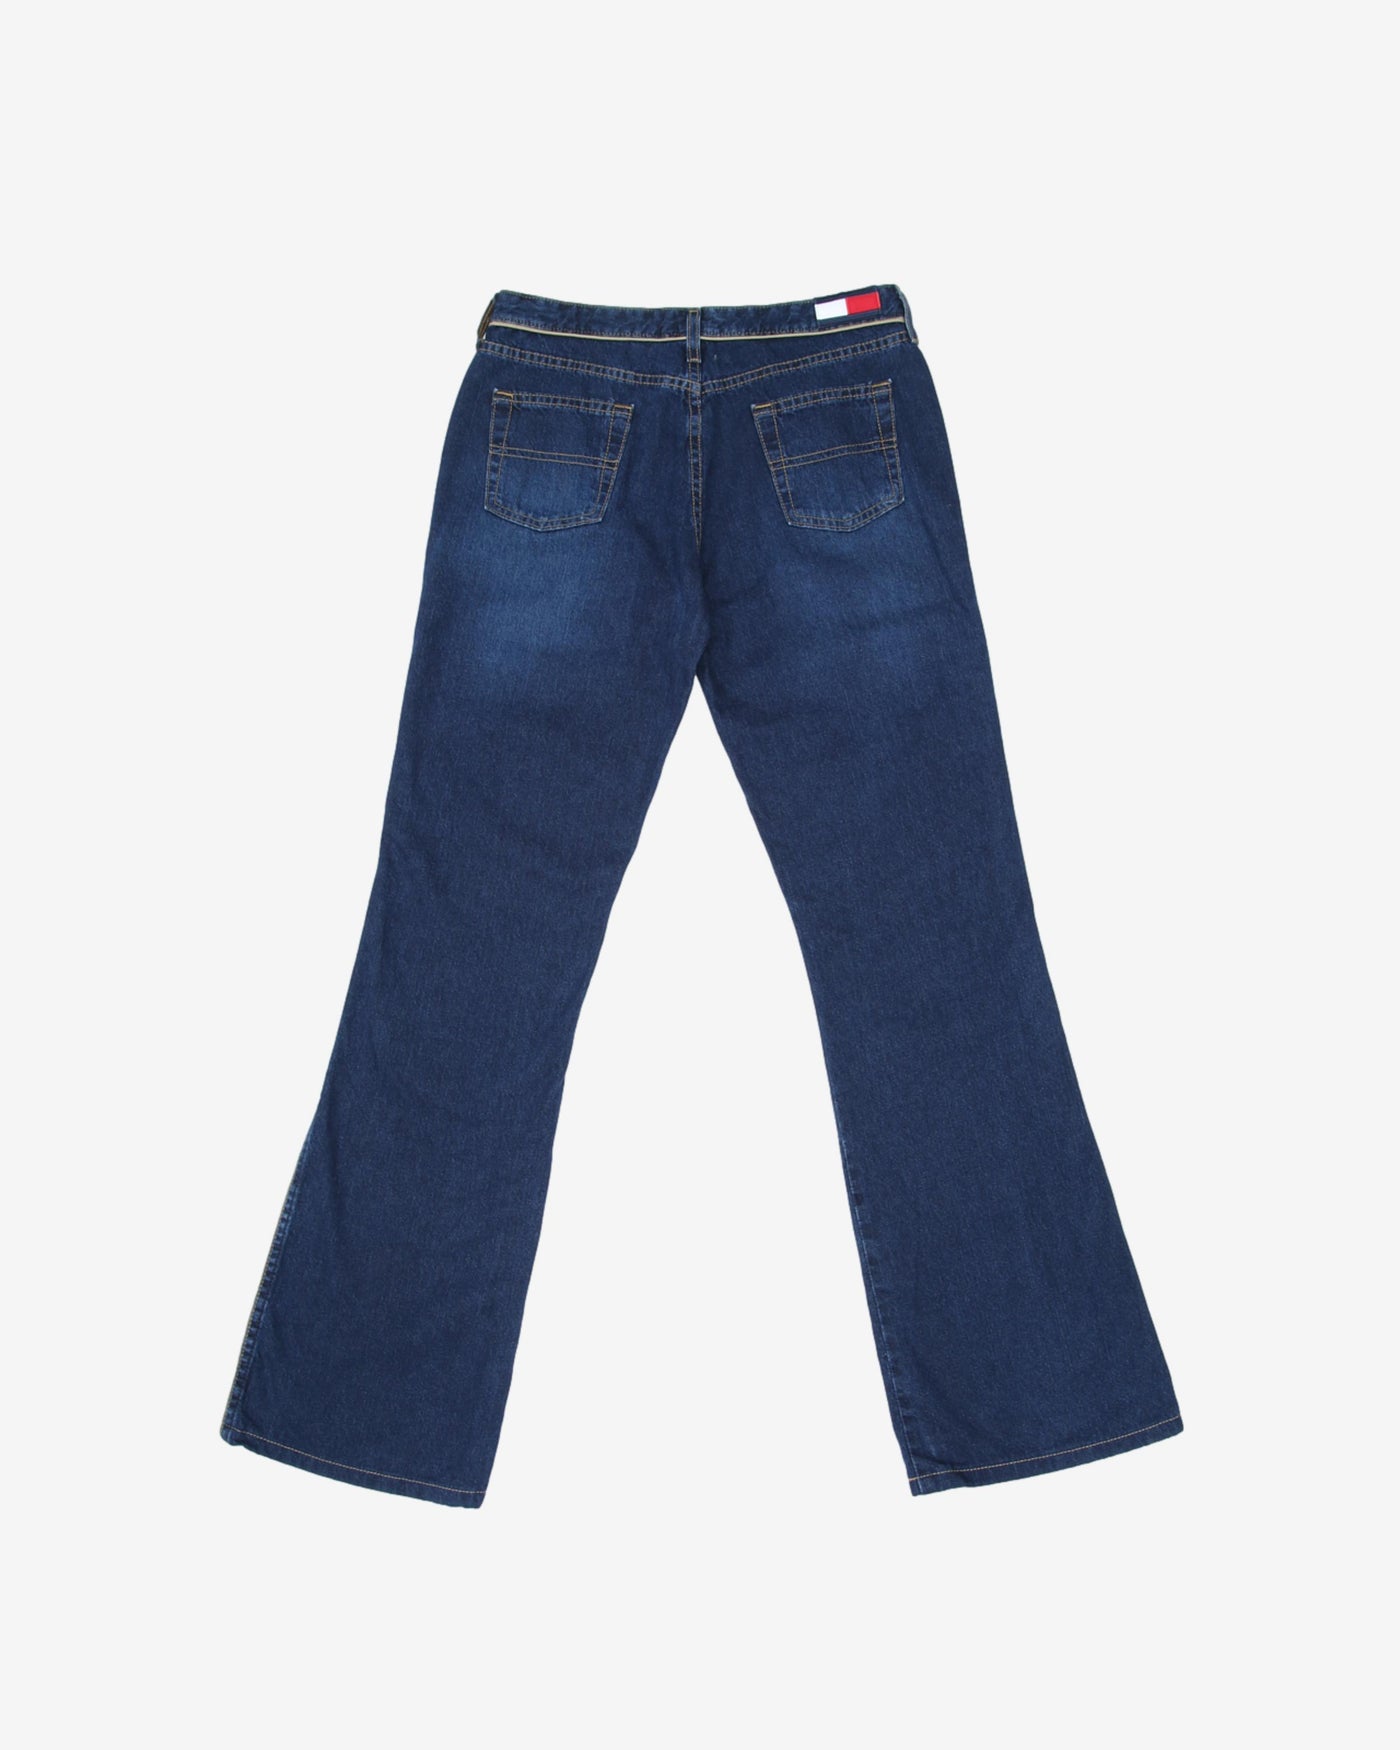 Tommy Jeans Dark Wash Blue Straight Leg Denim Jeans - W30 L32